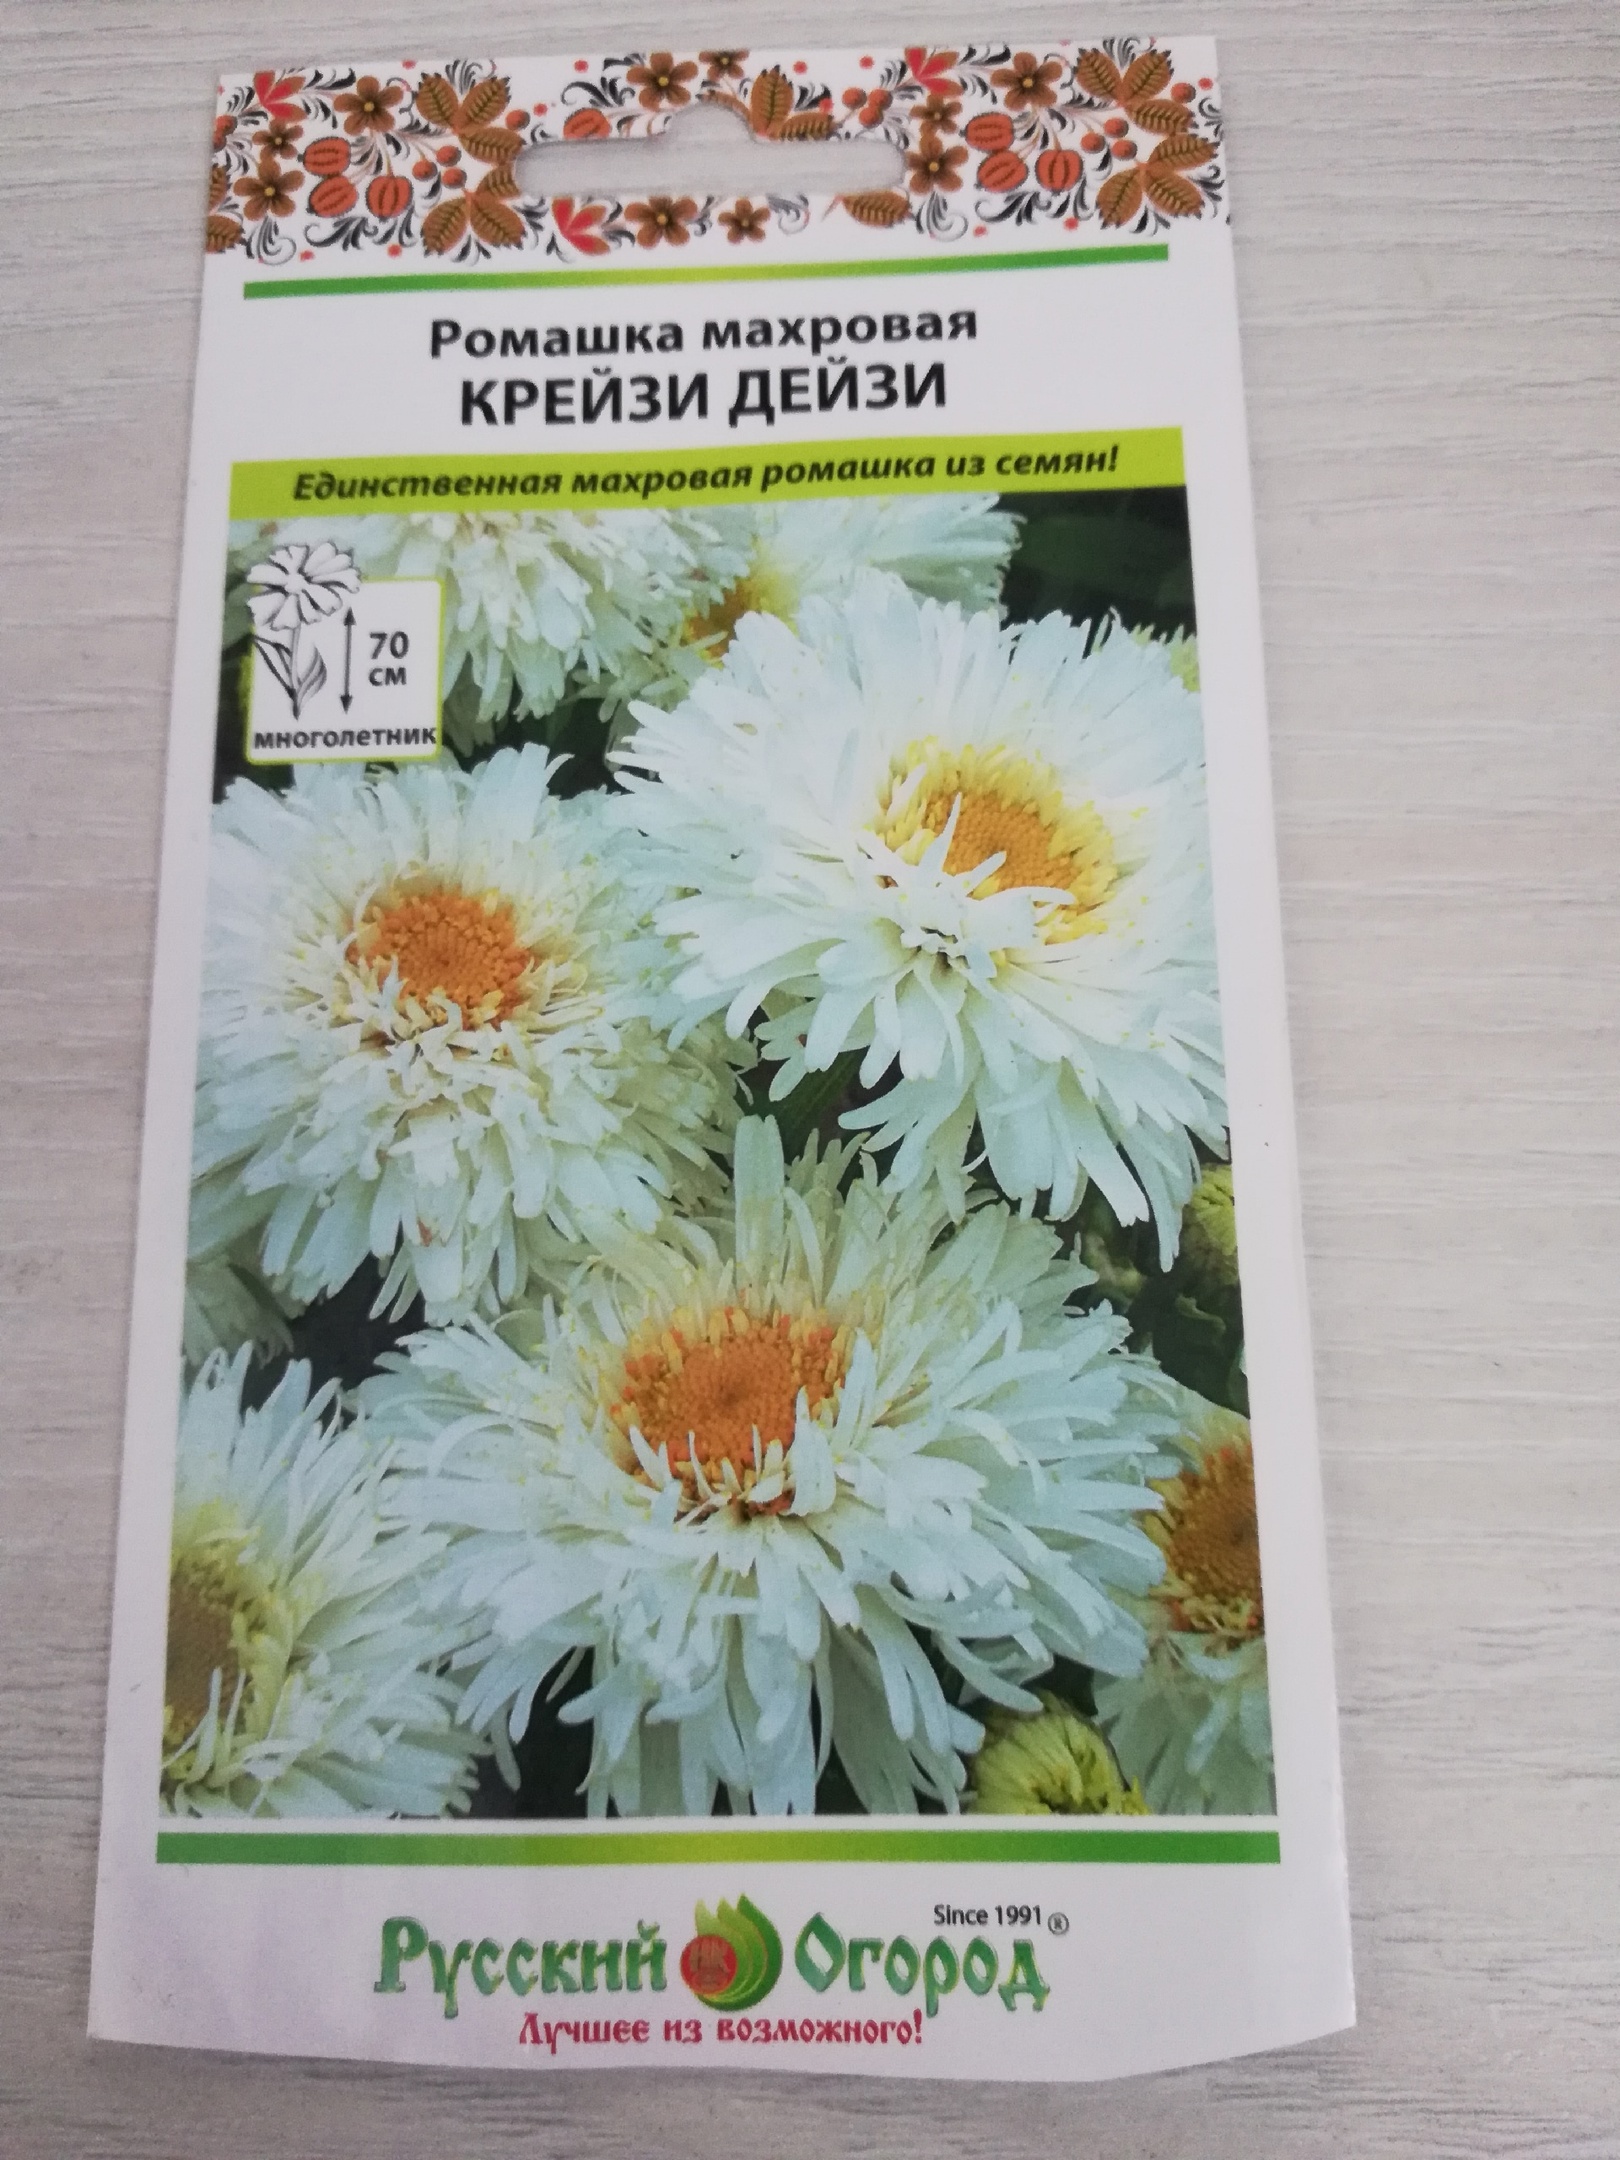 Семена ромашка Русский огород Крейзи дейзи 703513 1 уп. - отзывыпокупателей на Мегамаркет